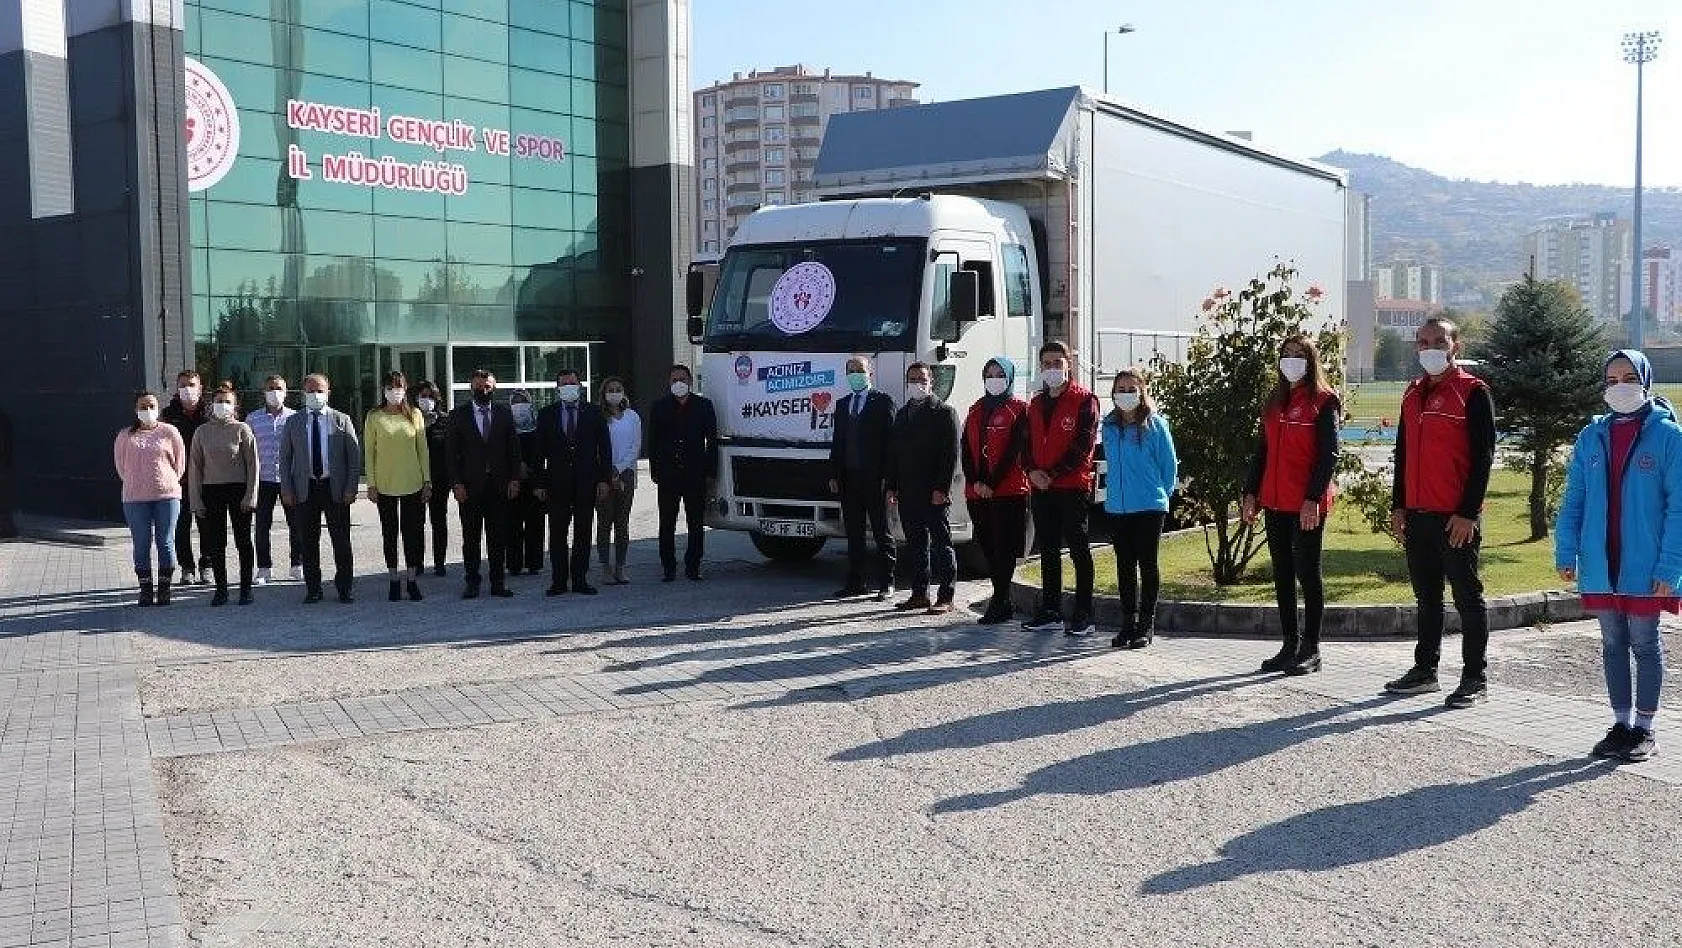 Kayseri Gençlik ve Spor İl Müdürlüğü, İzmir'e yardım için seferber oldu